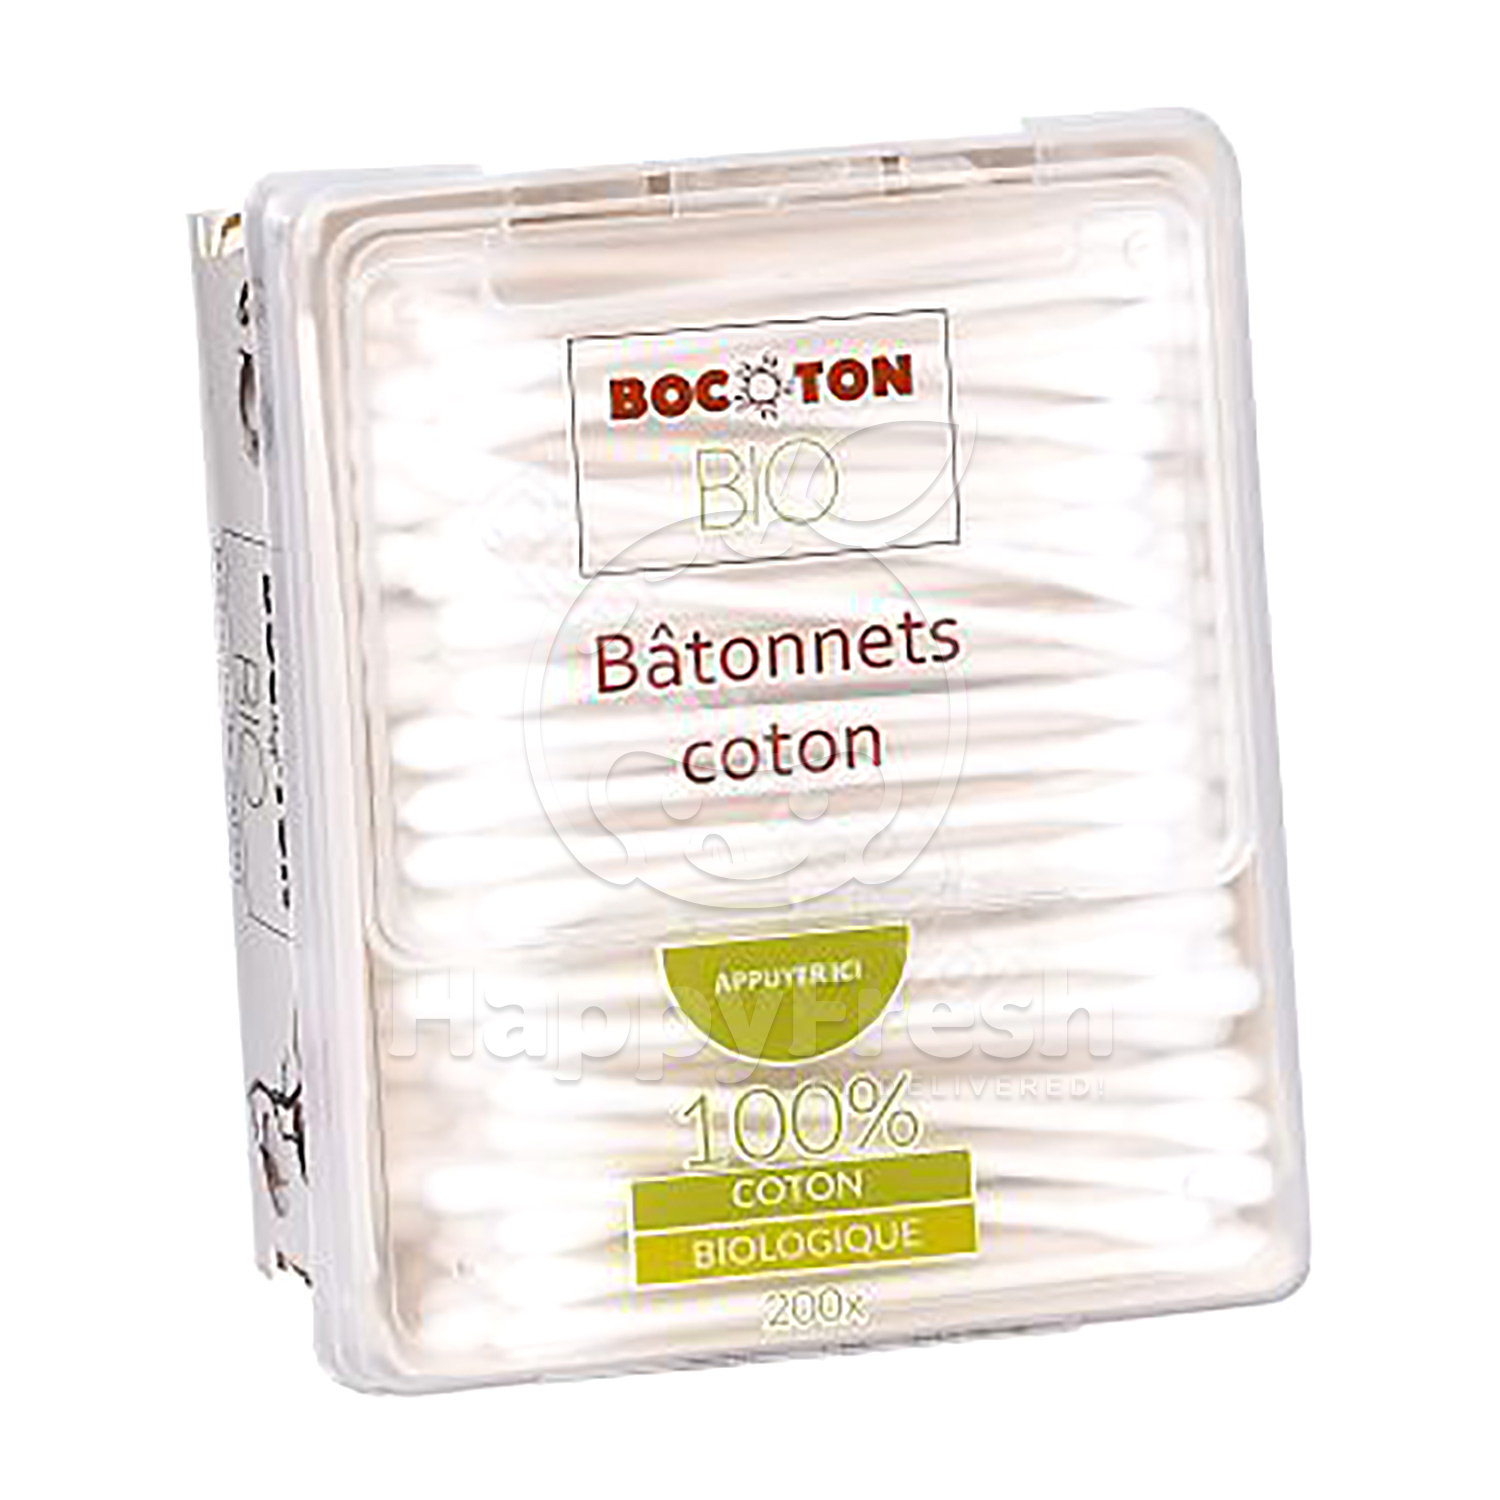 Bocoton bio Q-tips